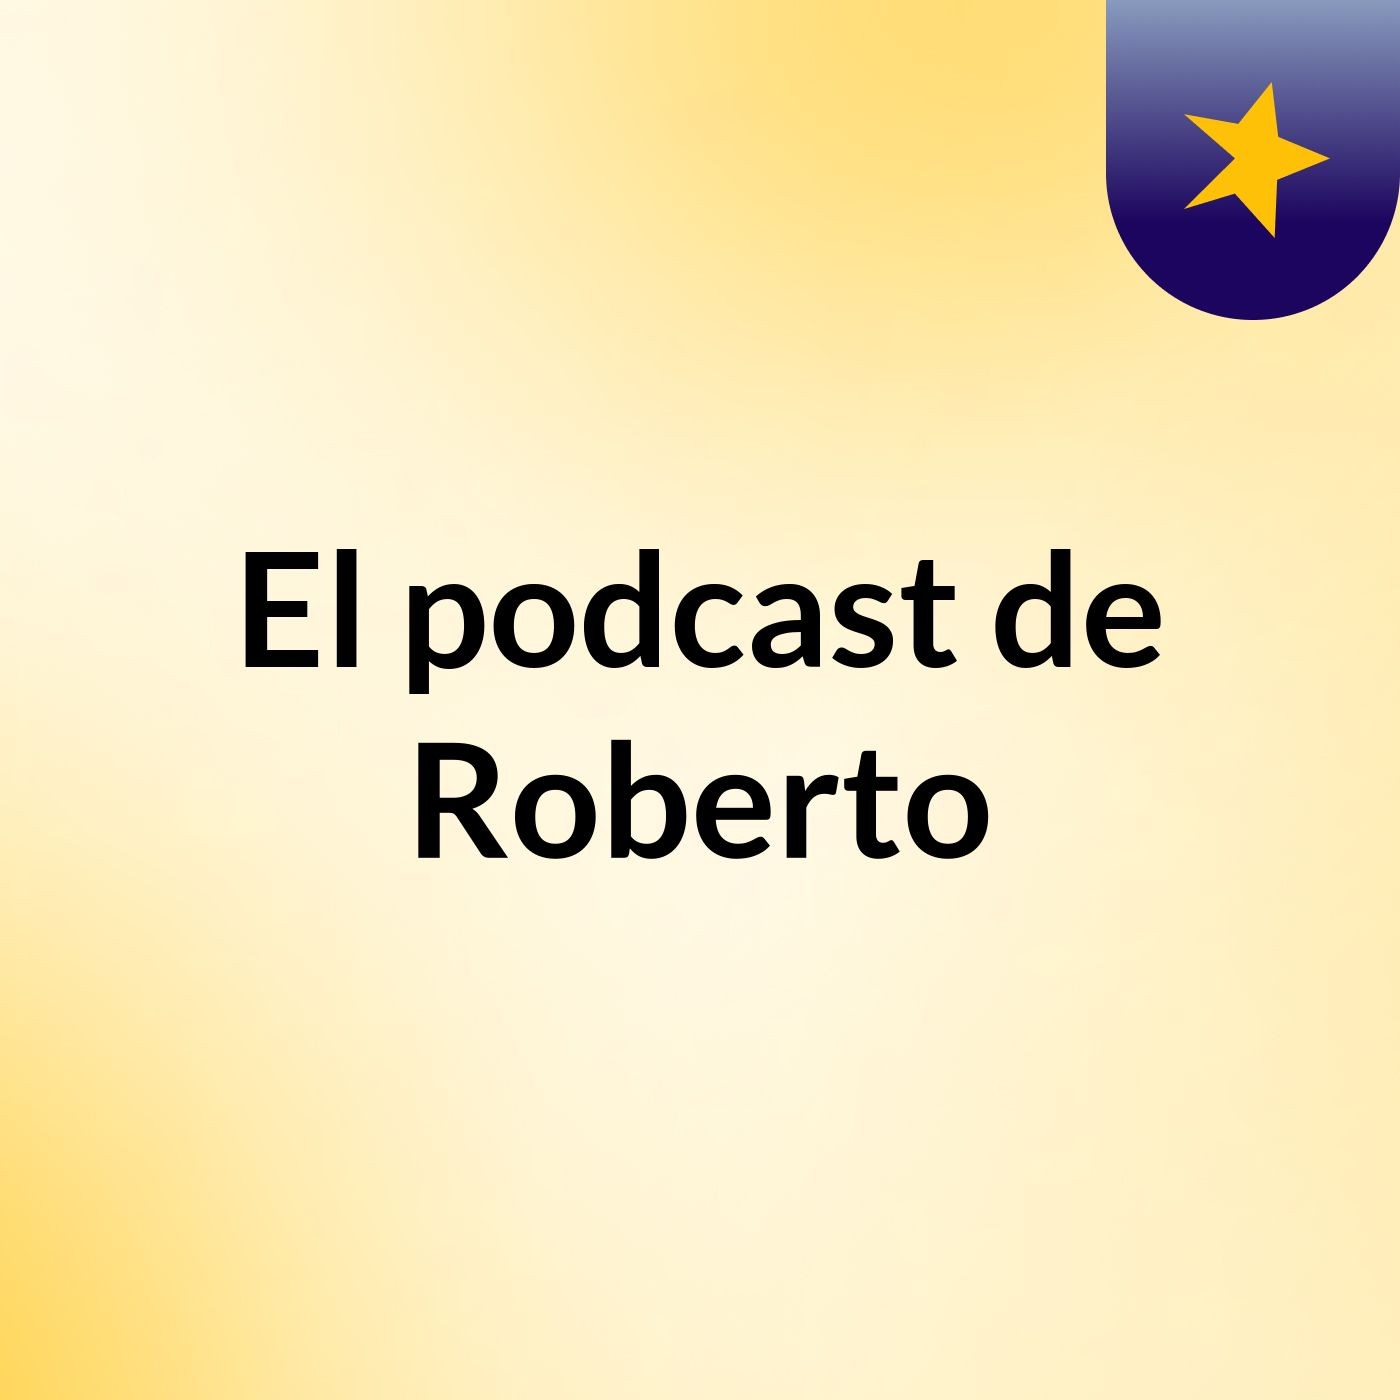 Episodio 2 - El podcast de Roberto